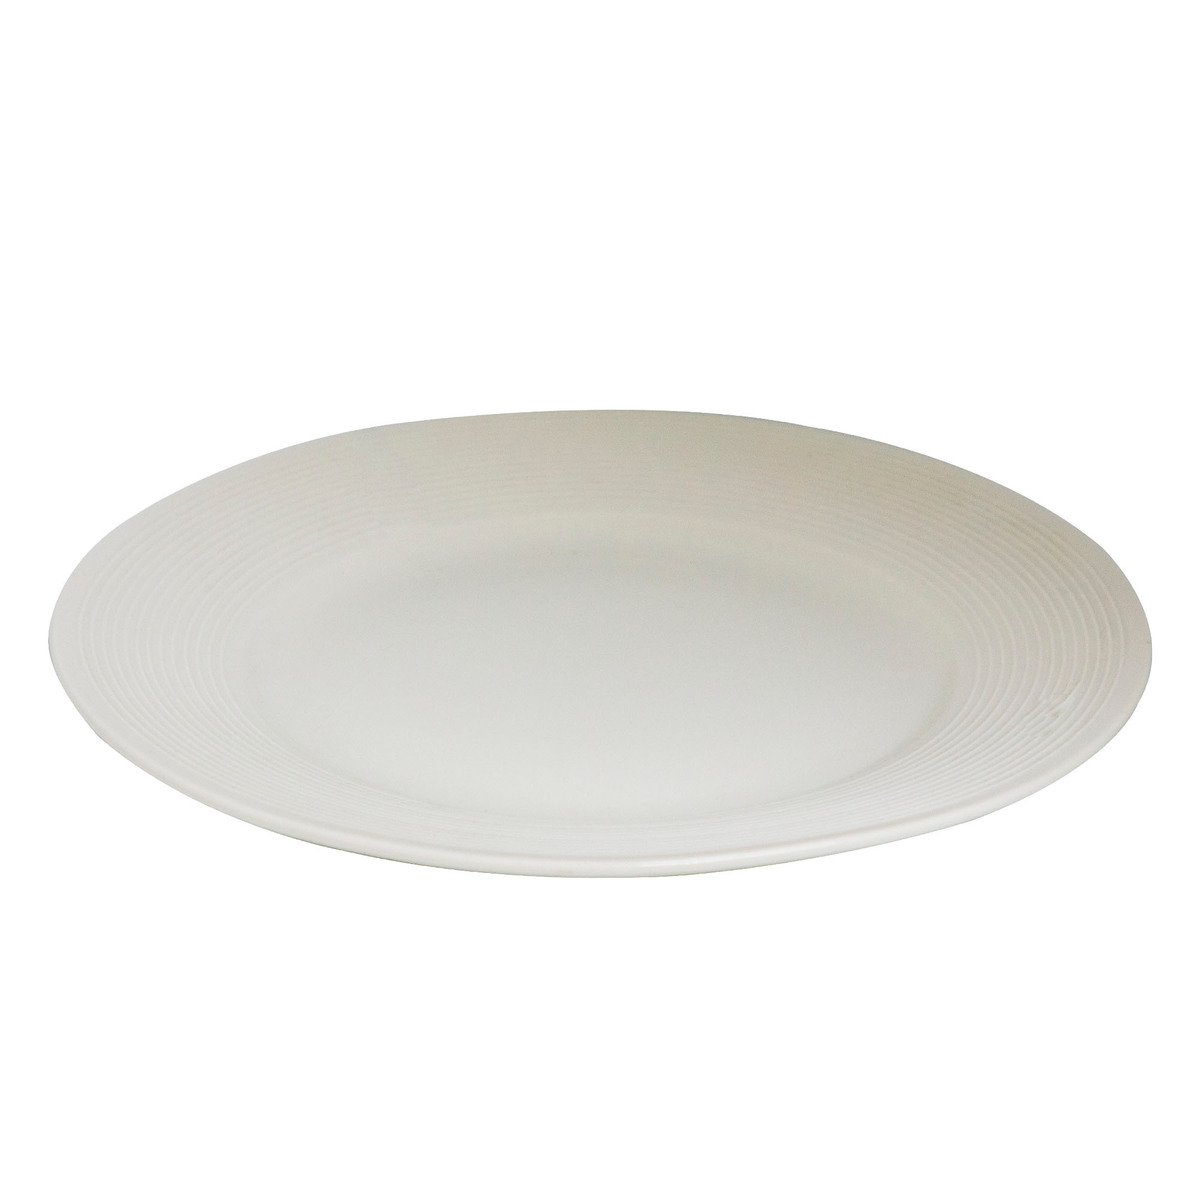 La Opala Dinner Plate 10 inch